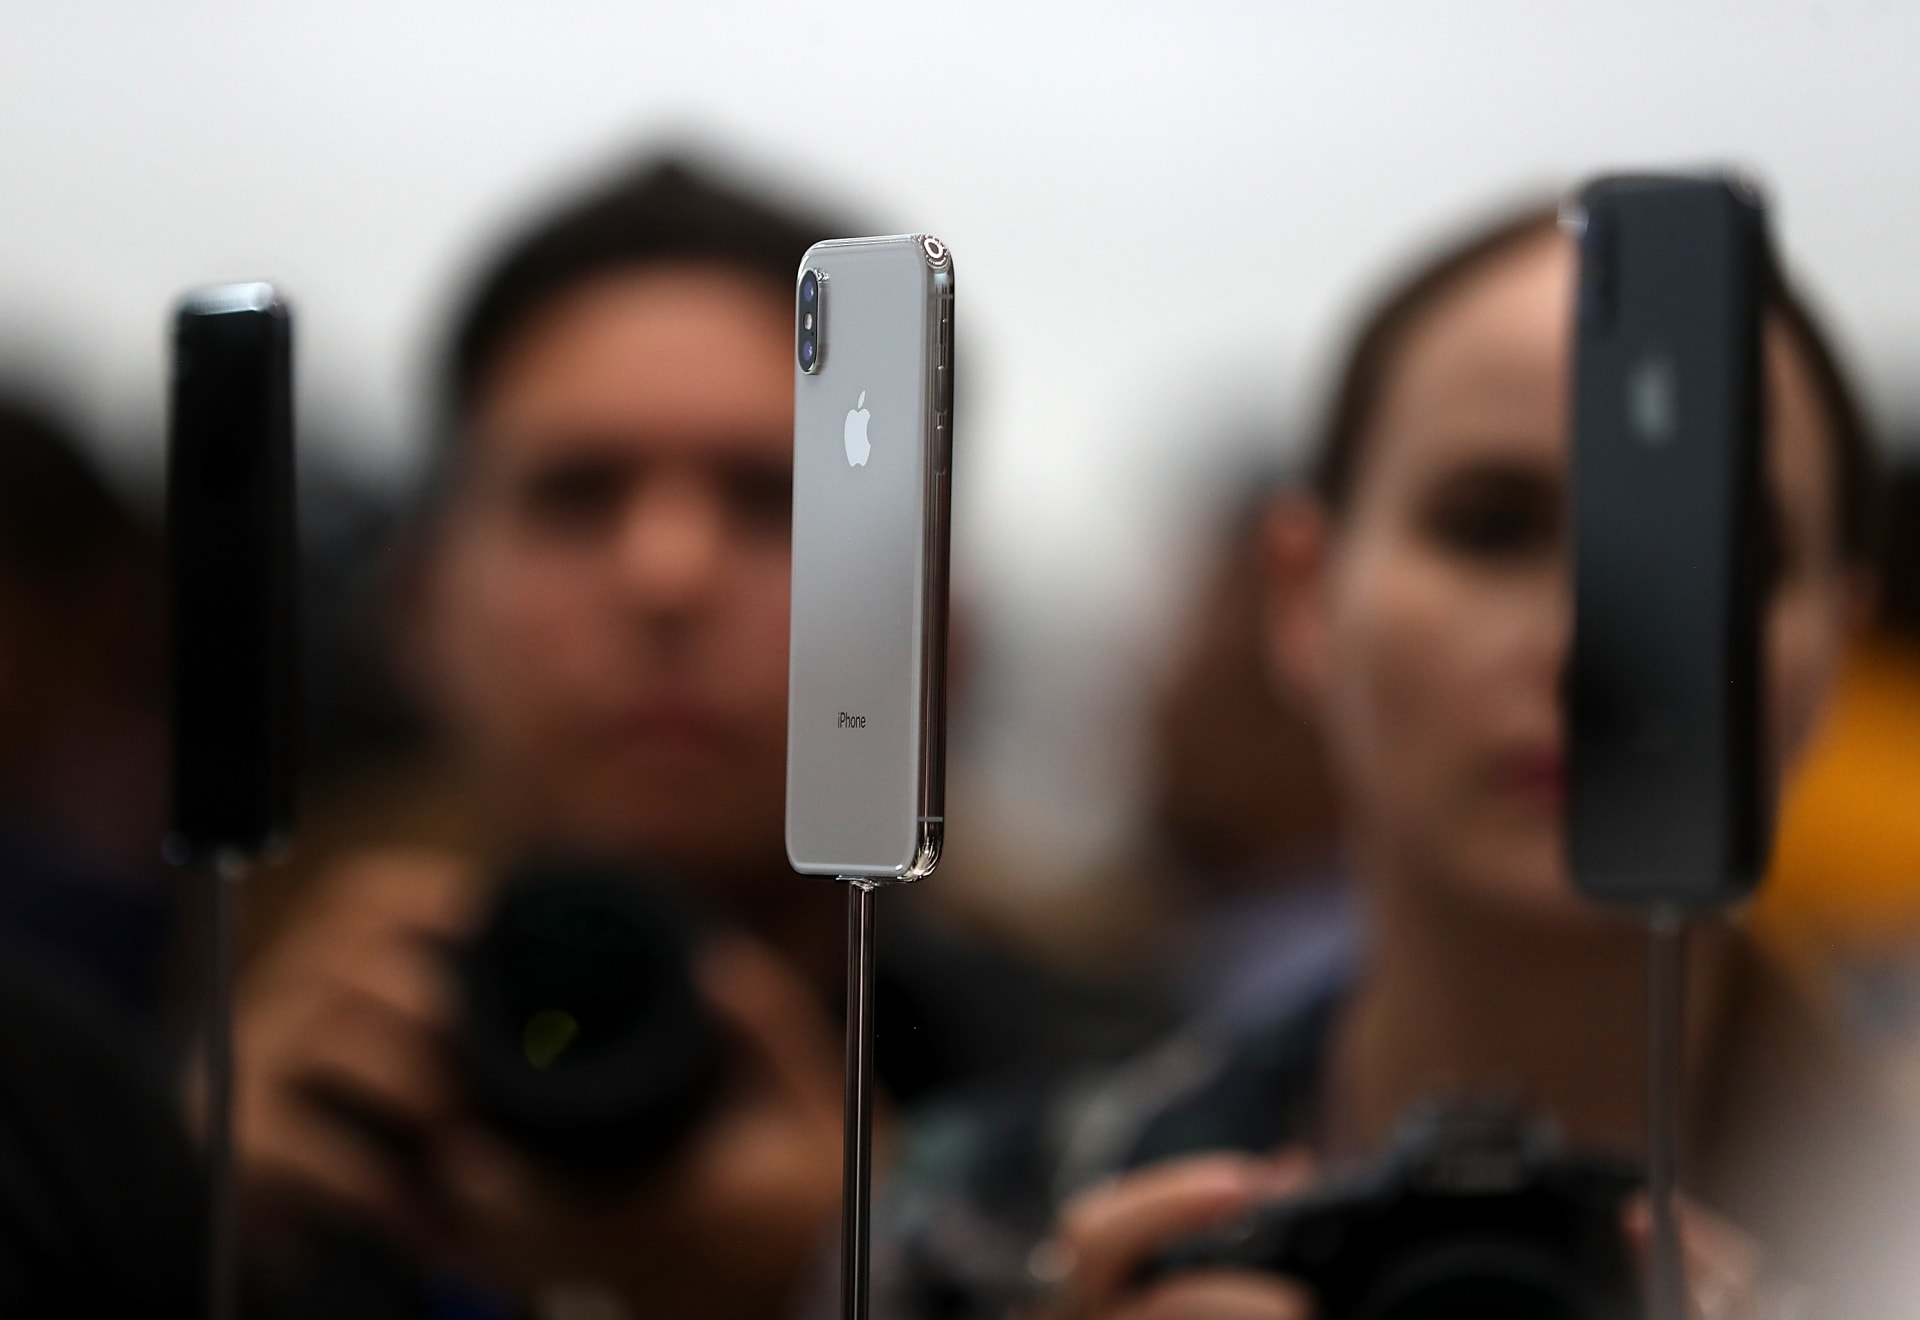 نظام تشغيل "iOS 11" الجديد متوفر الآن لهواتف أيفون وأجهزة أي باد.. ماذا يقدم؟